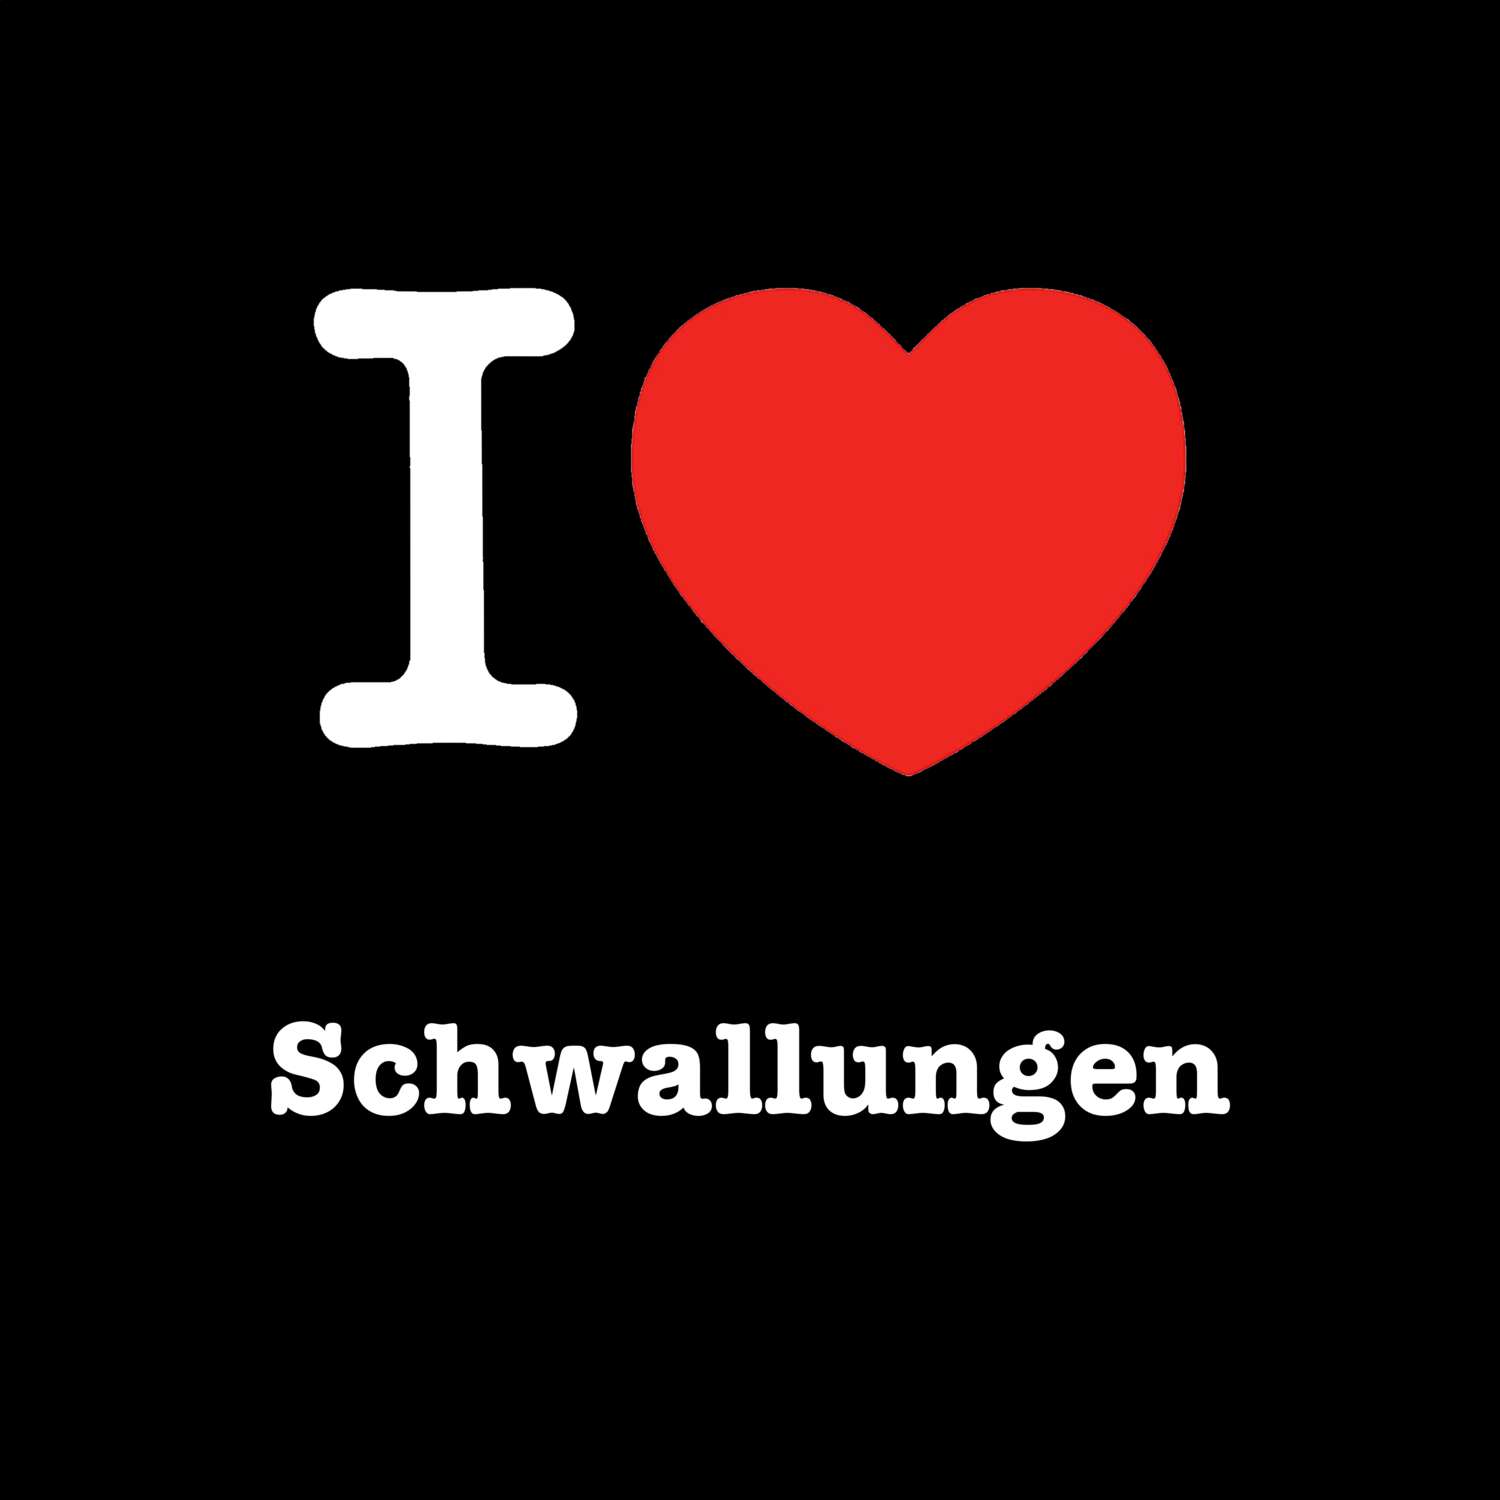 Schwallungen T-Shirt »I love«